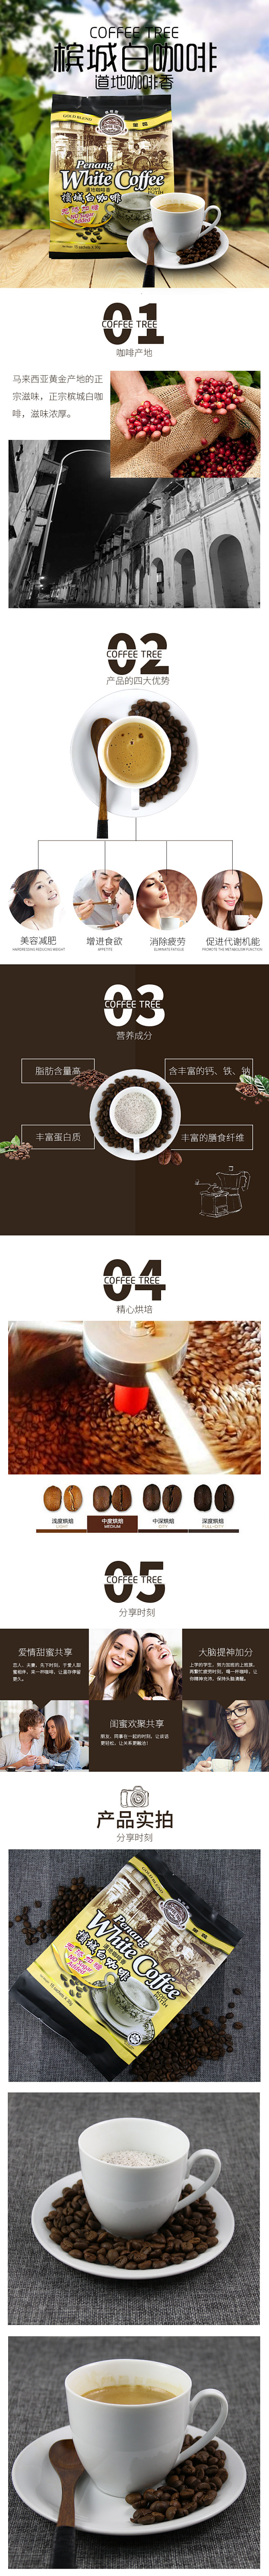 咖啡 进口食品 承接各类目首页设计 直通...